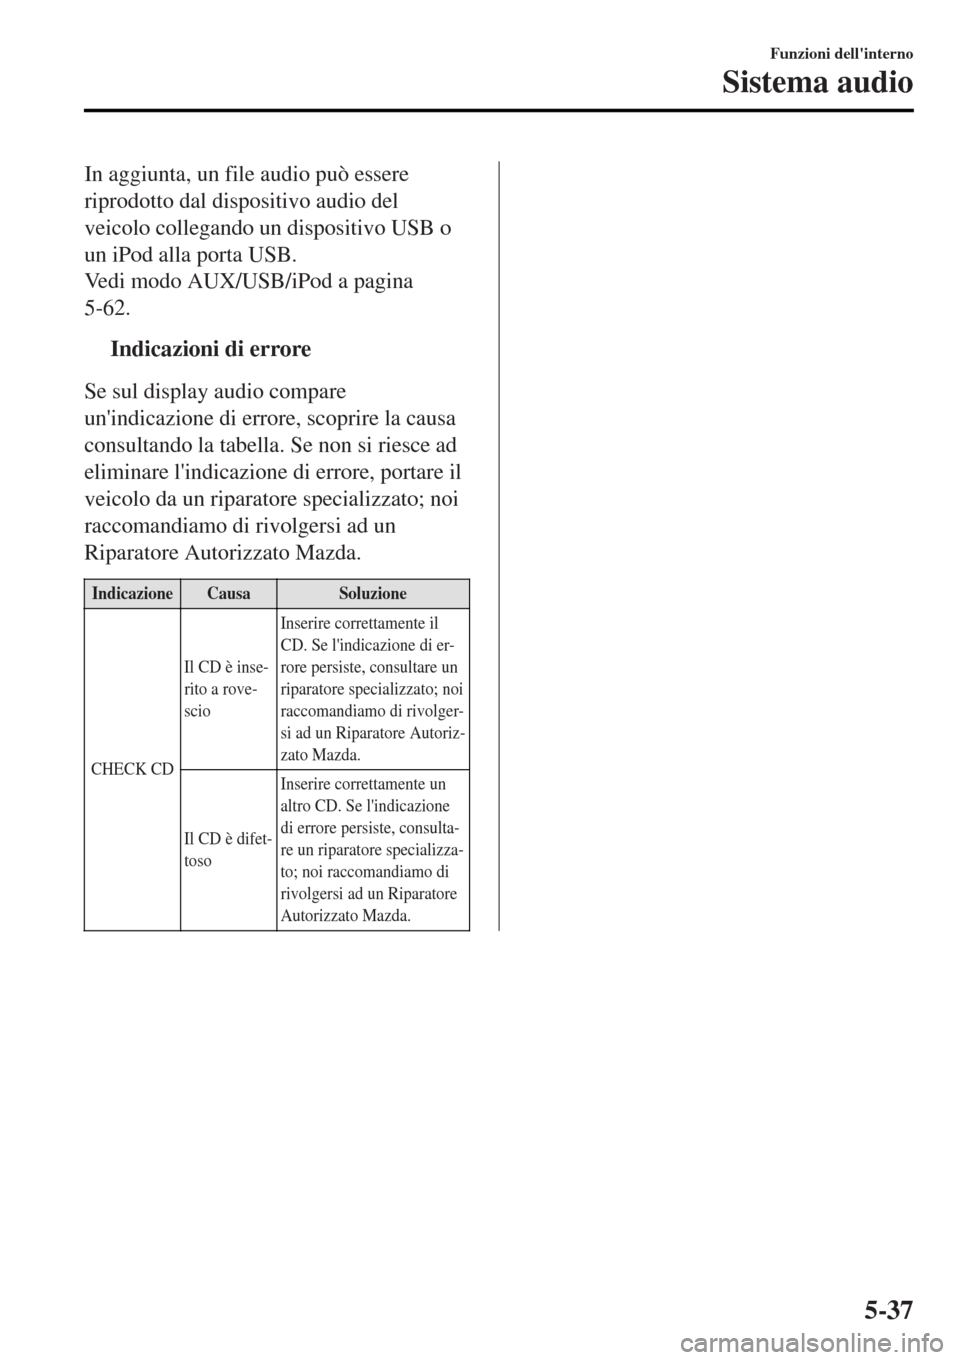 MAZDA MODEL MX-5 2015  Manuale del proprietario (in Italian) In aggiunta, un file audio può essere
riprodotto dal dispositivo audio del
veicolo collegando un dispositivo USB o
un iPod alla porta USB.
Vedi modo AUX/USB/iPod a pagina
5-62.
tIndicazioni di errore